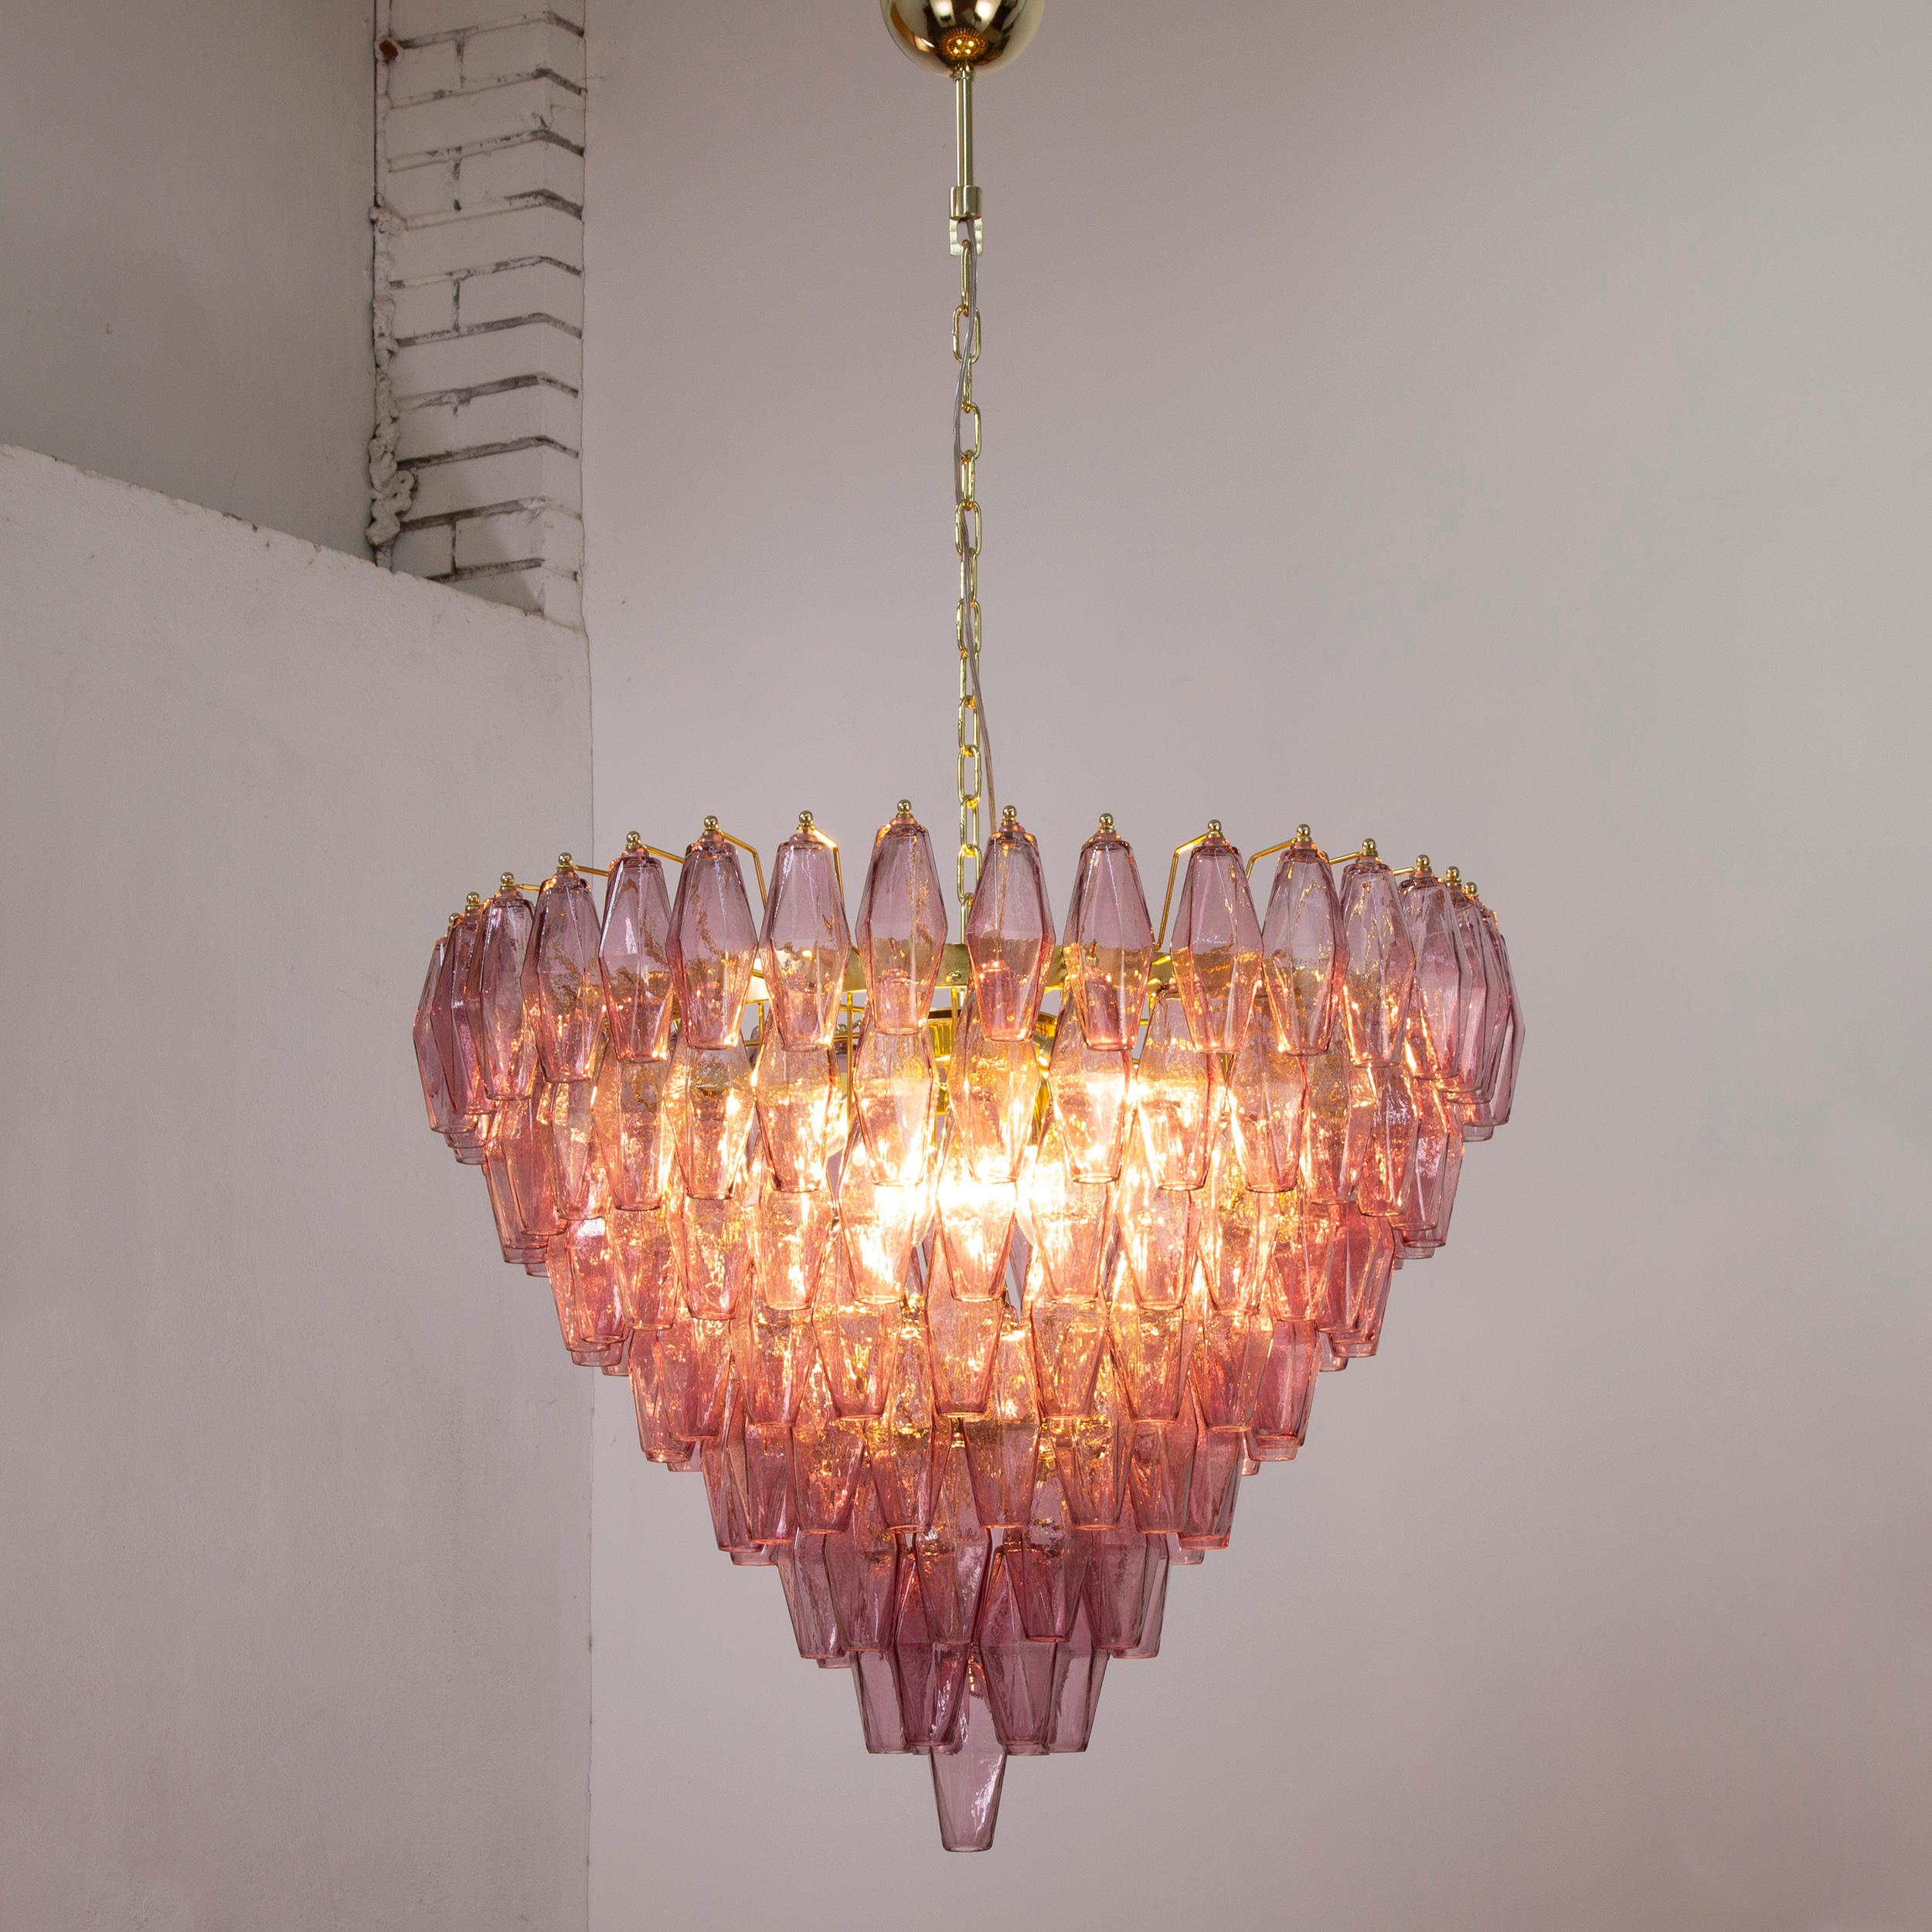 Grande lampe en verre de Murano aux couleurs polies, inspirée du style italien du milieu du siècle dernier.

Directement à partir de l'écran :
Nous ne sommes pas de simples fournisseurs, mais des producteurs directs ! Situées à proximité de Venise,